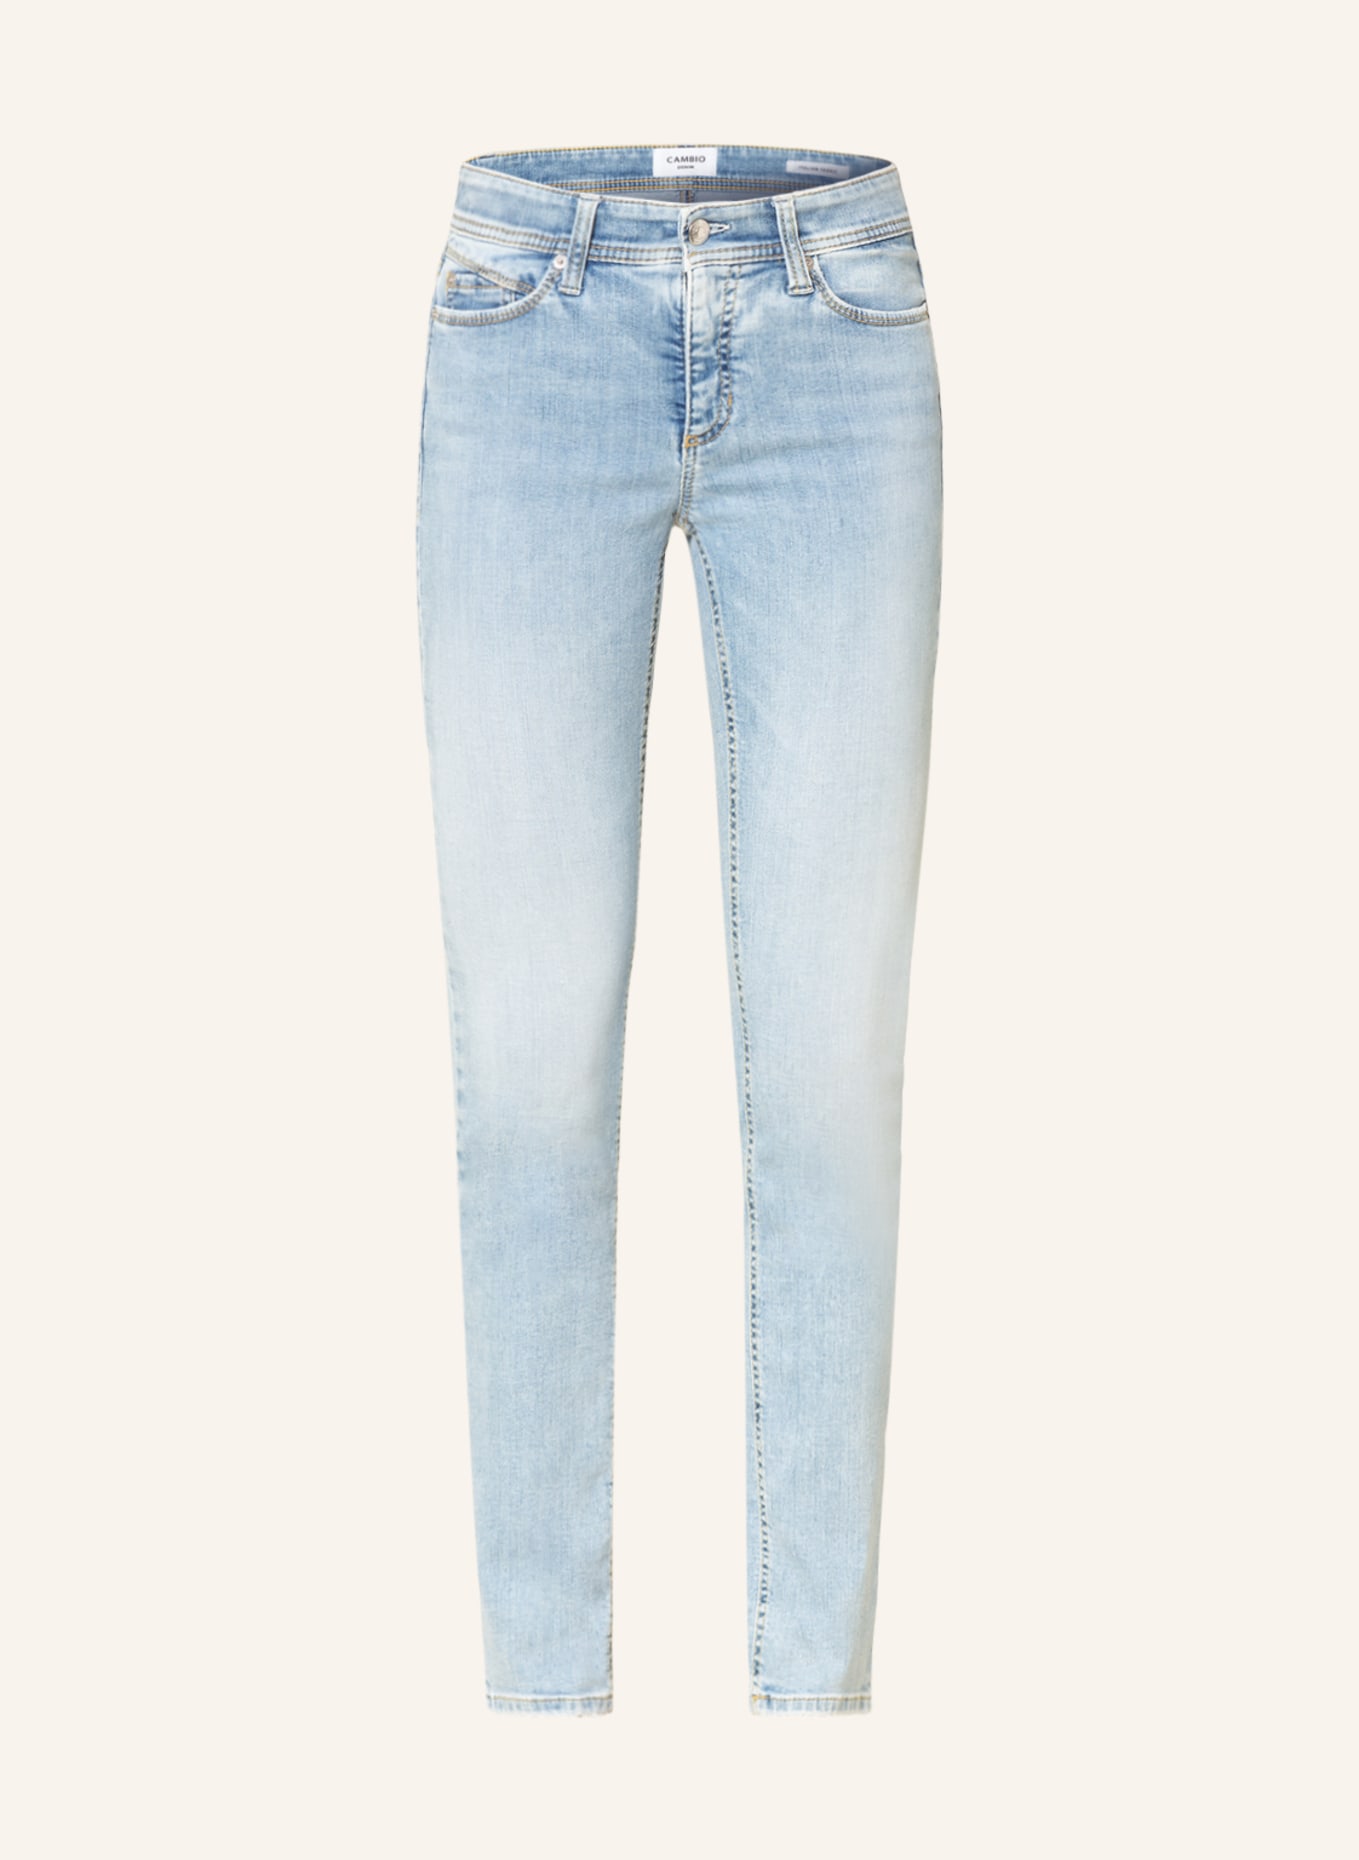 CAMBIO Skinny Jeans PARLA, Farbe: 5325 summer contrast (Bild 1)